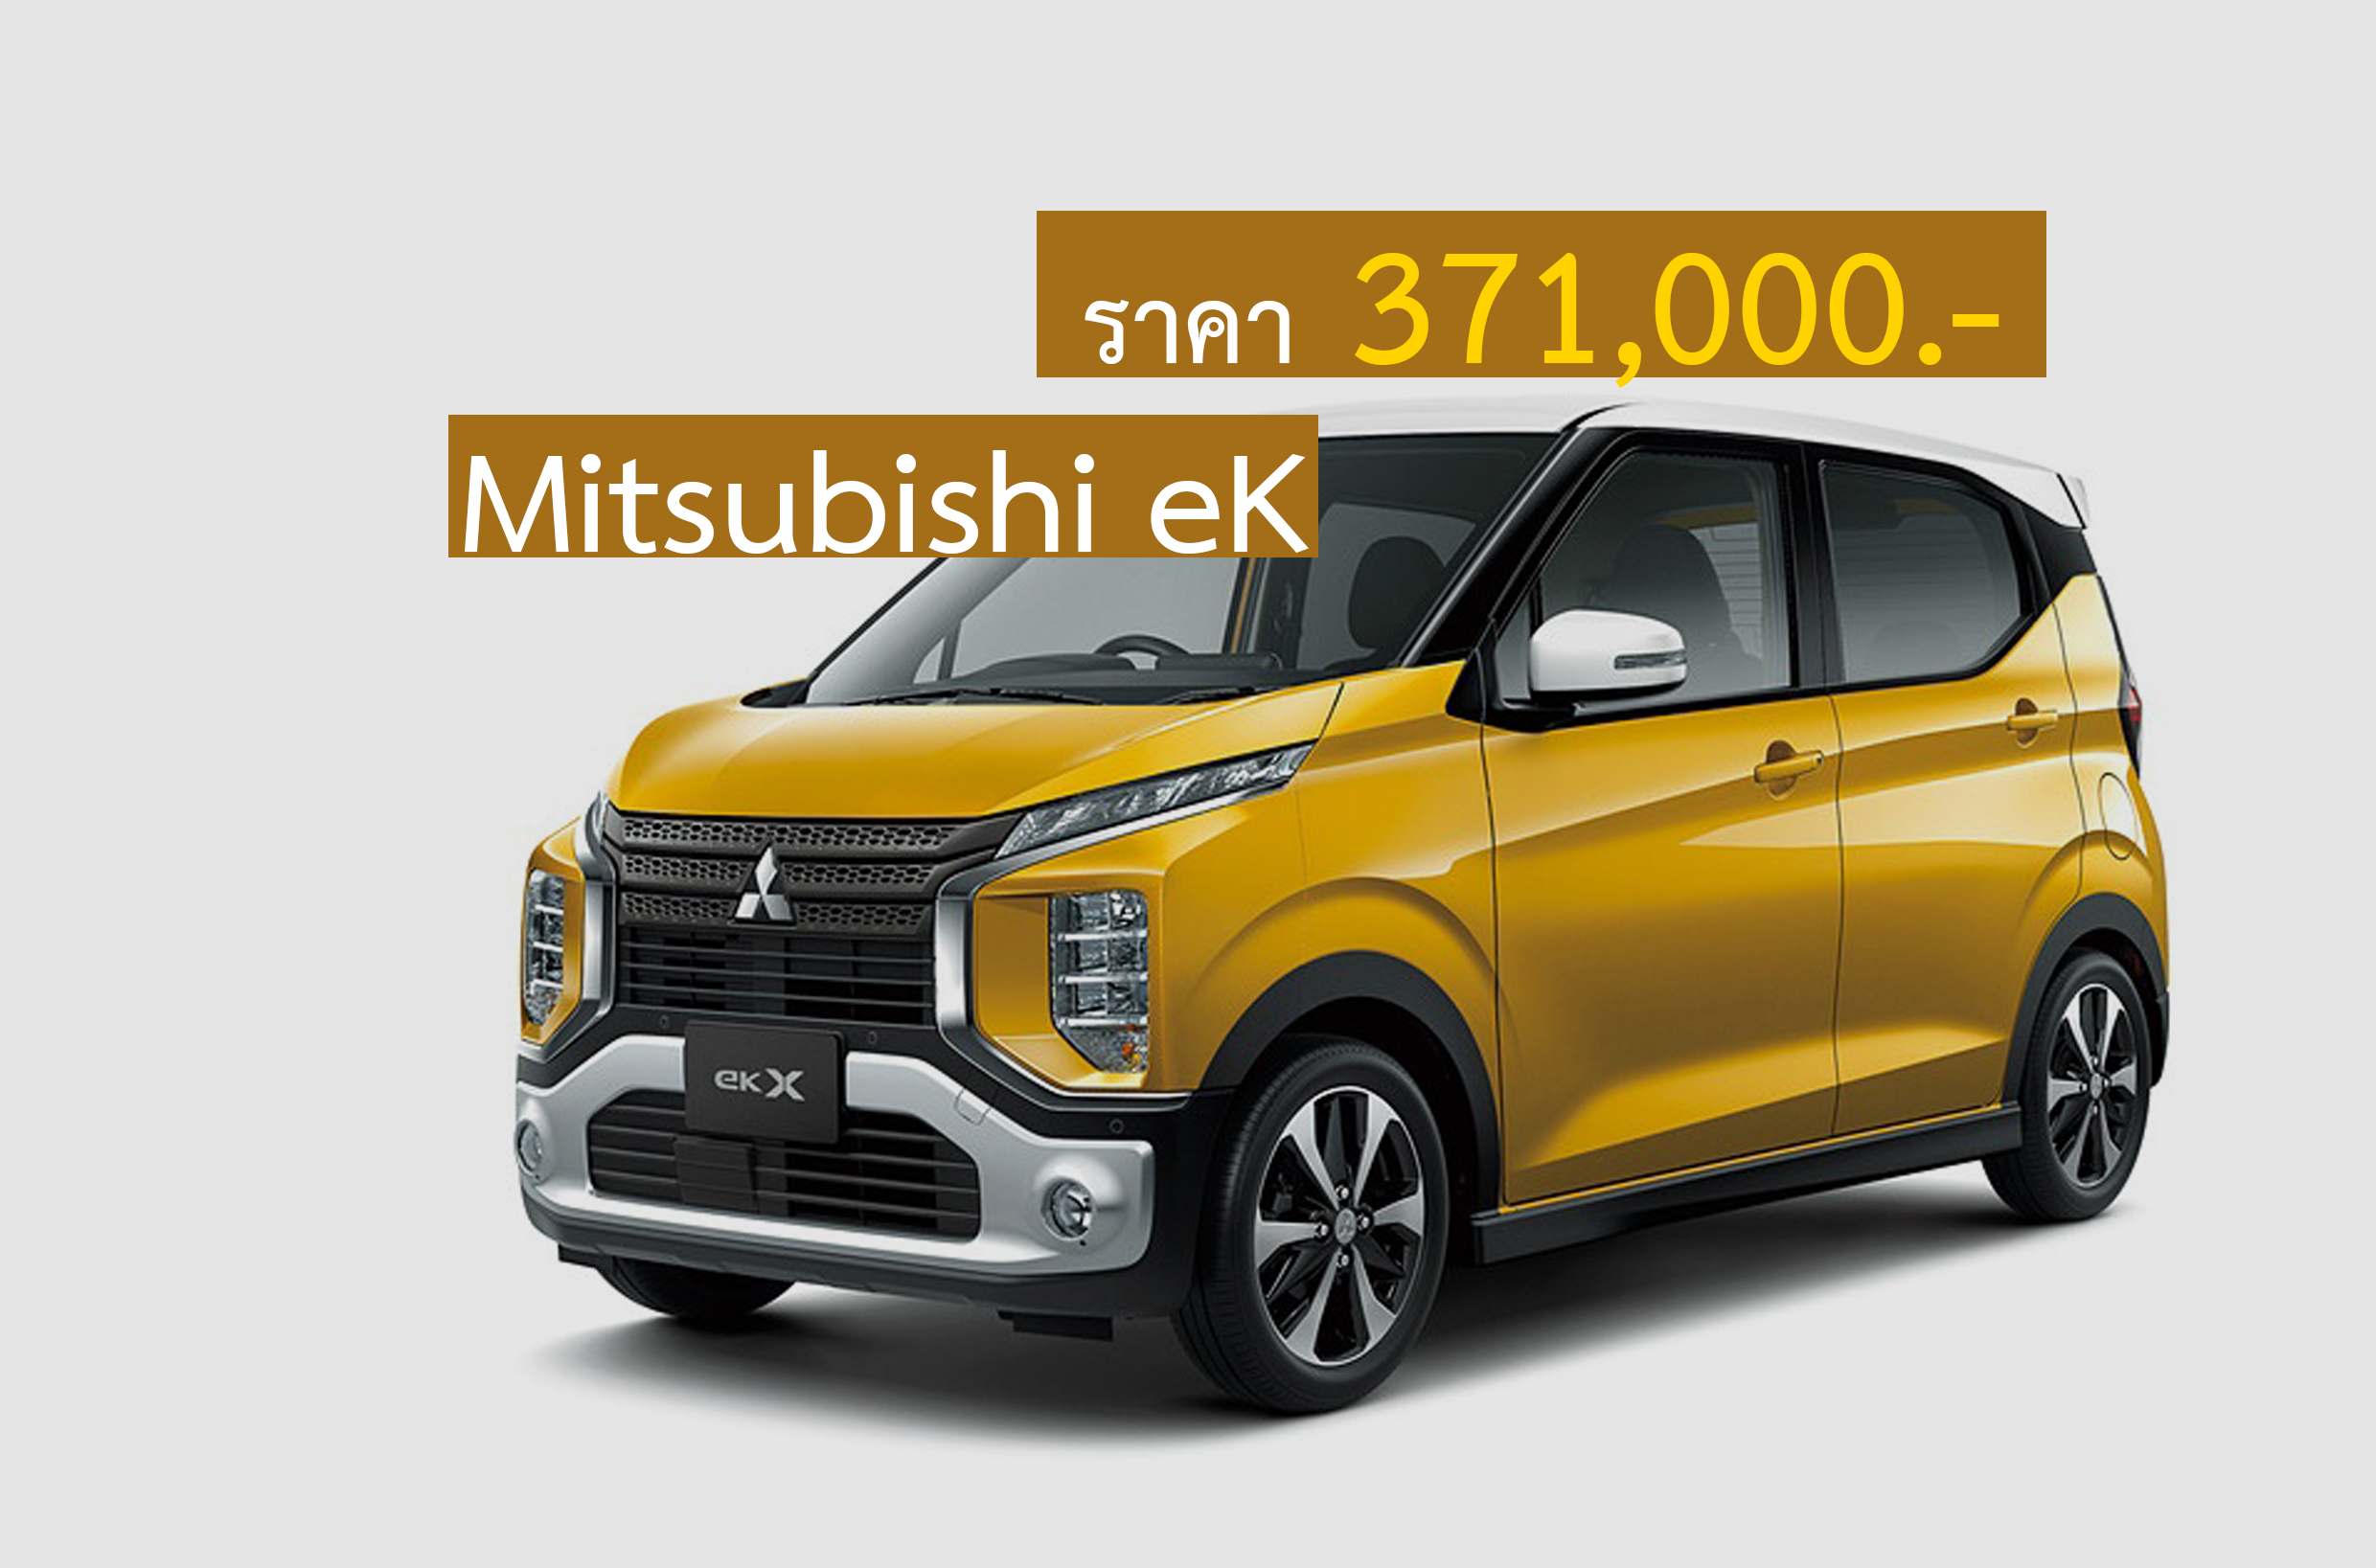 Mitsubishi eK รถจิ๋วราคาประหยัด 371,000 บาทในญิปุ่น